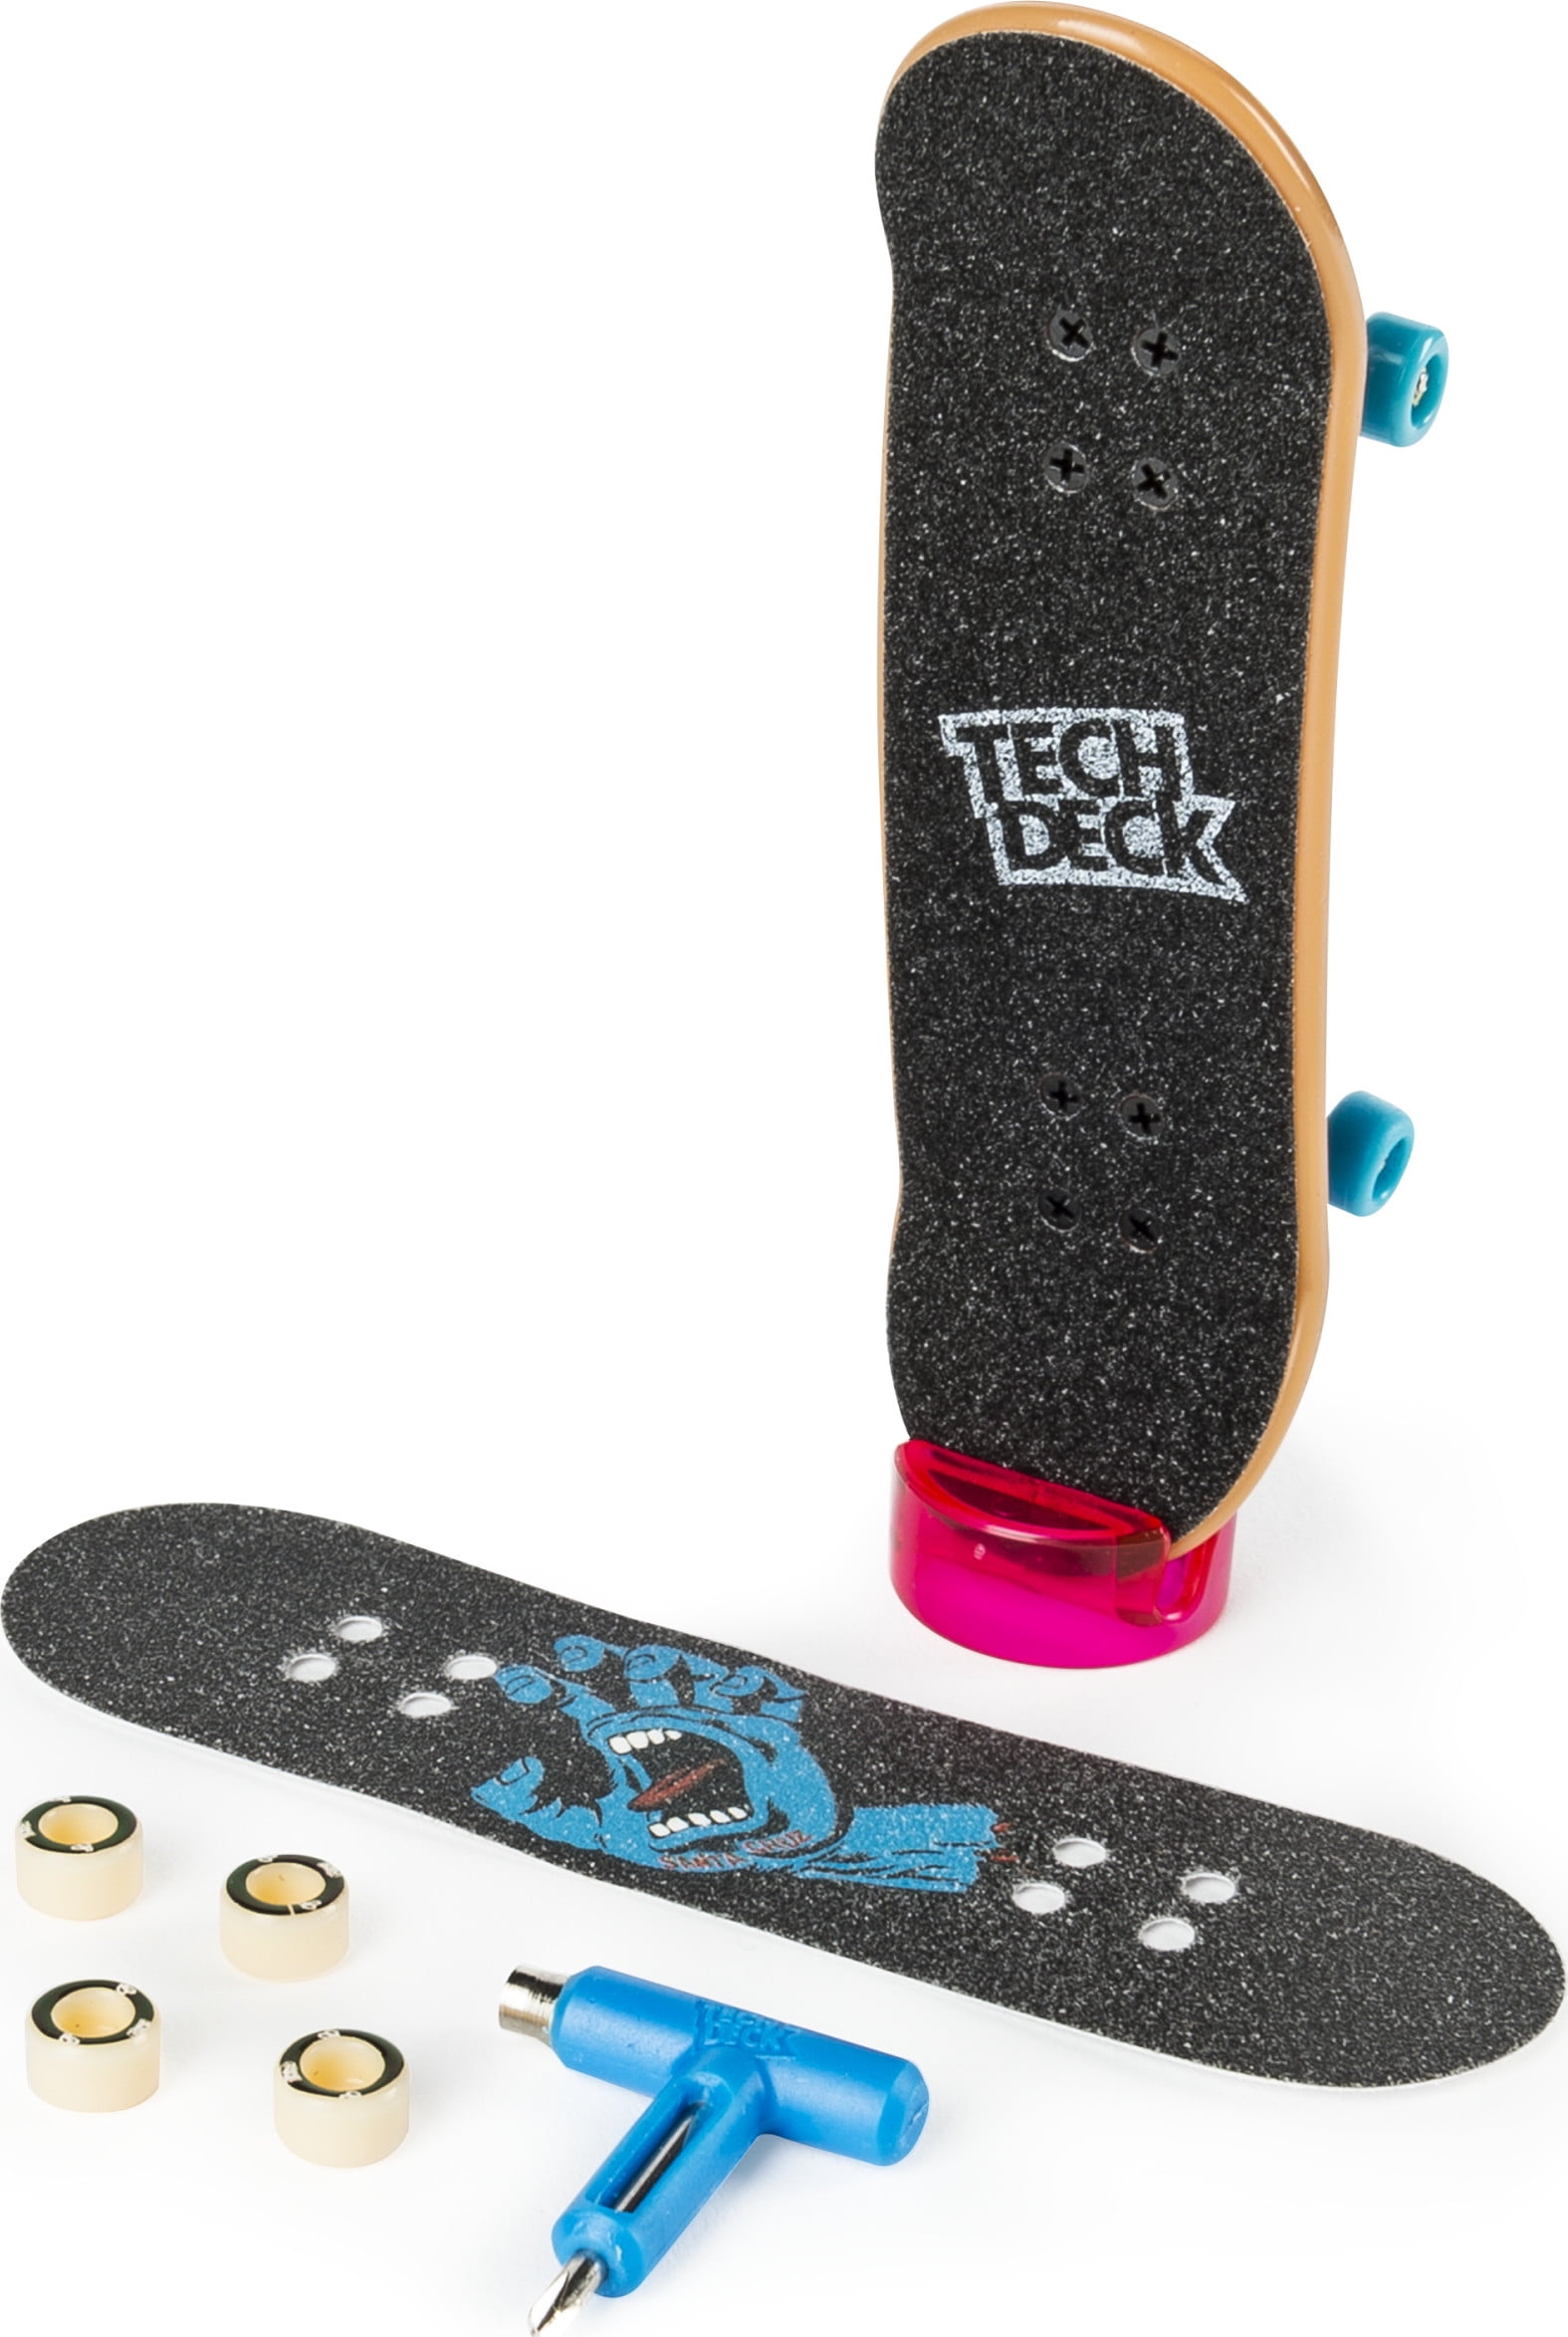 Tech Deck World Edition Finesse SK 8 Shop Bonus Pack touche Skate Sonic 